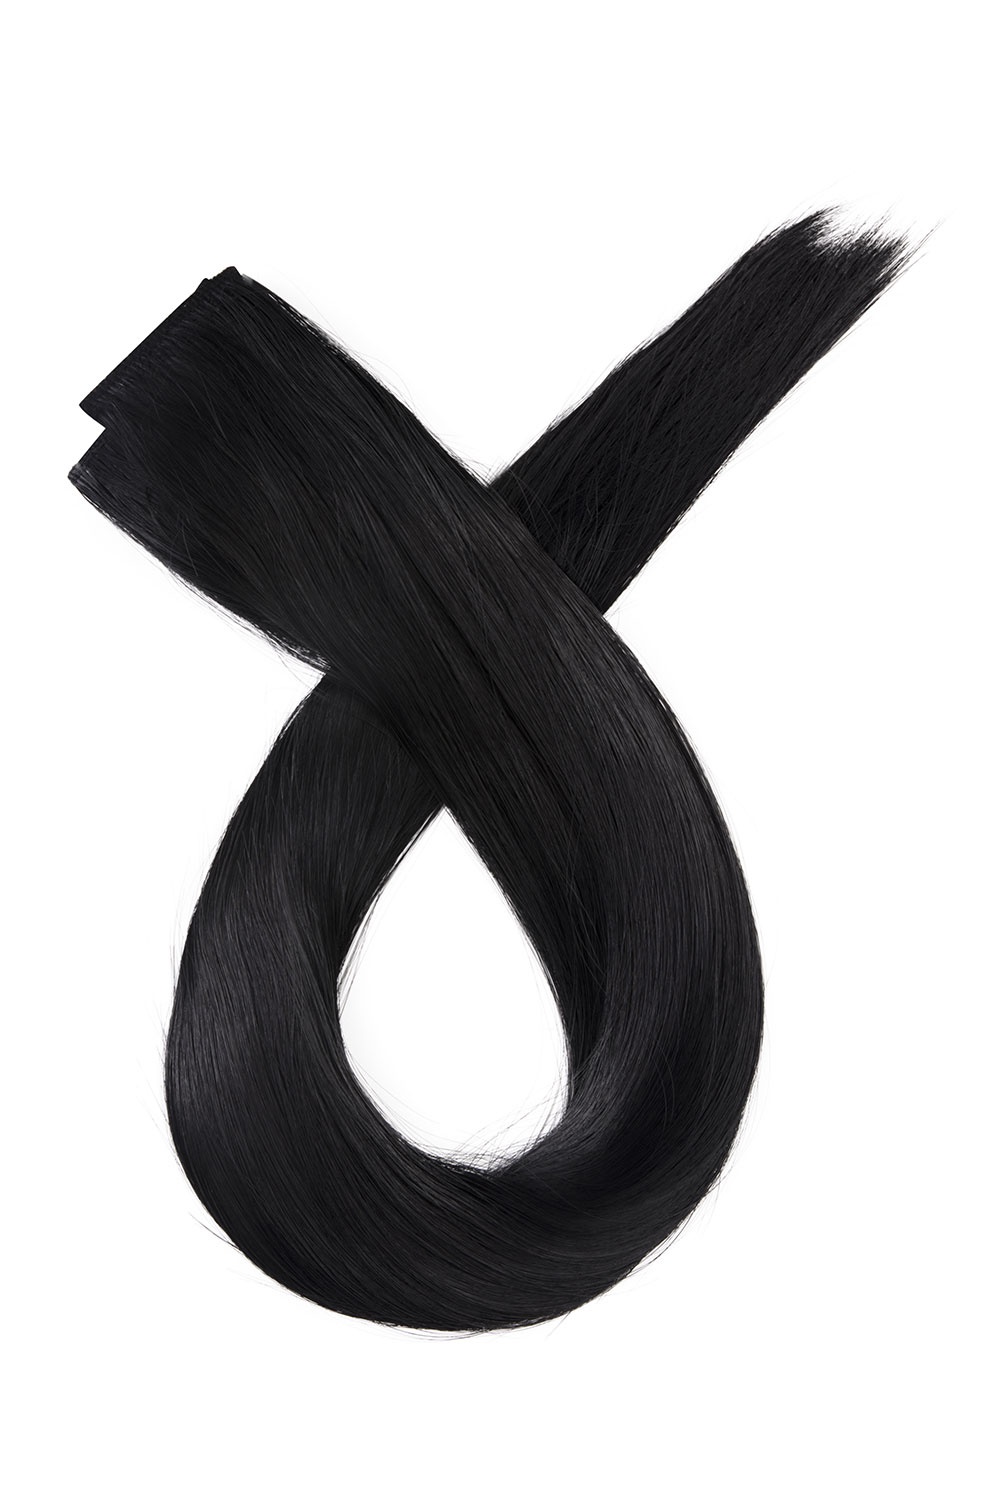 Čierne clip in vlasy, 50cm, 150g, farba 1